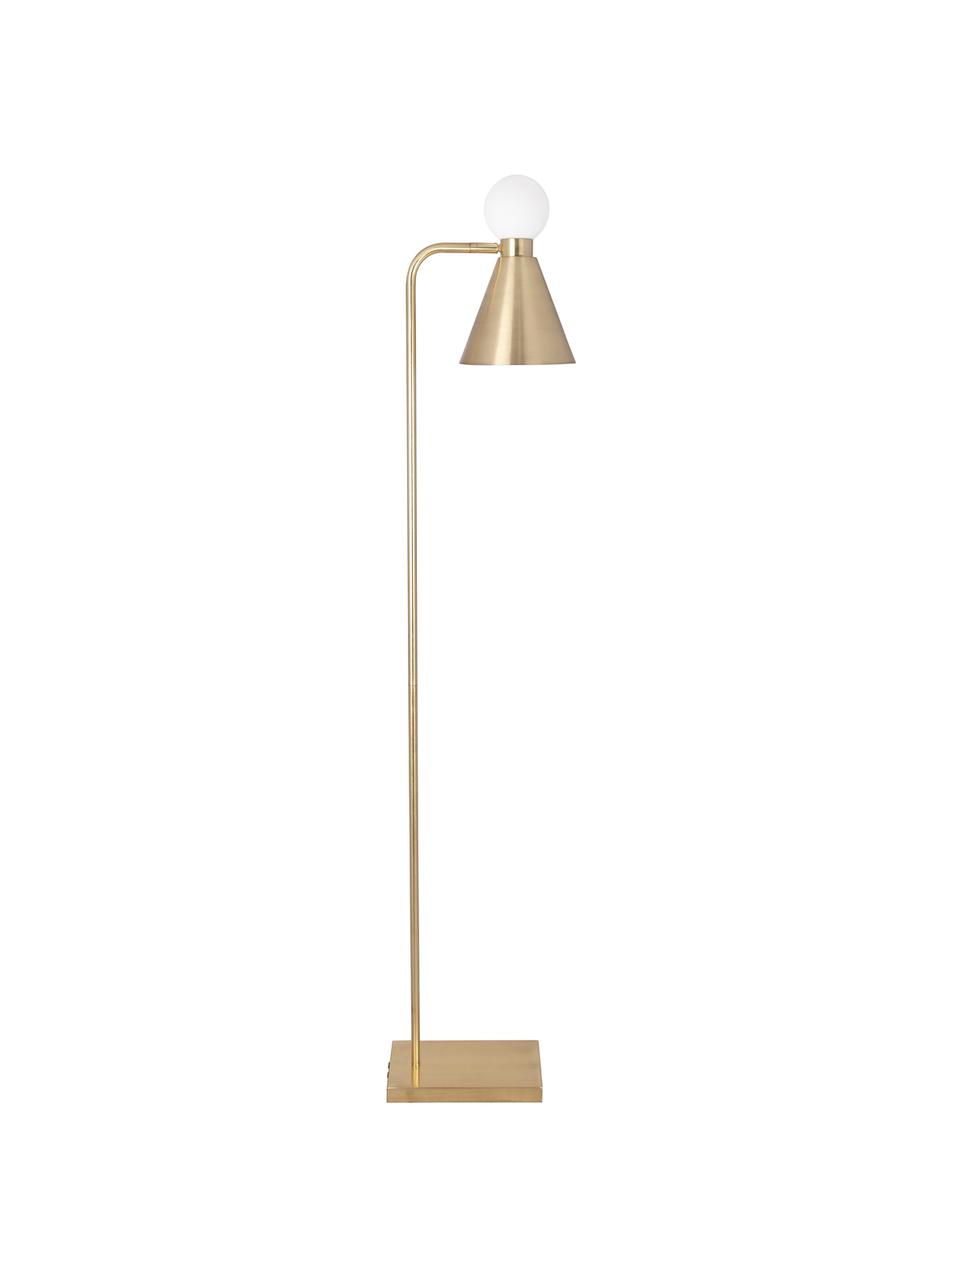 Leeslamp Ludo met lichtgevende glazen decoratie, Lampenkap: vermessingd metaal, Lampvoet: vermessingd metaal, Geborsteld messingkleurig, wit, 18 x 156 cm